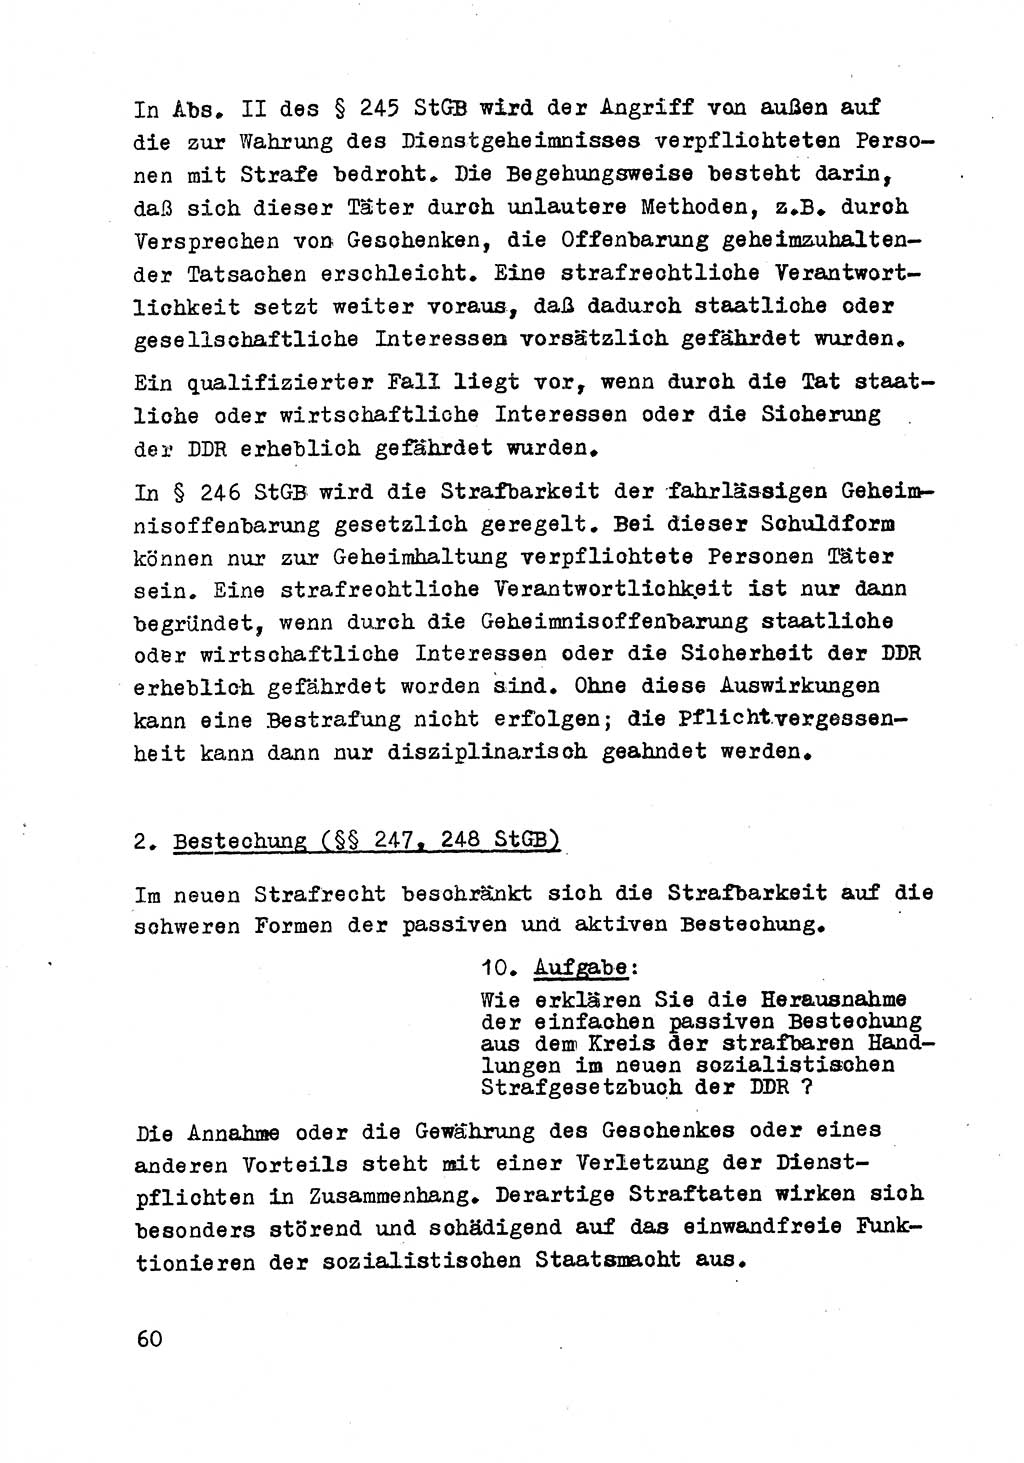 Strafrecht der DDR (Deutsche Demokratische Republik), Besonderer Teil, Lehrmaterial, Heft 8 1970, Seite 60 (Strafr. DDR BT Lehrmat. H. 8 1970, S. 60)